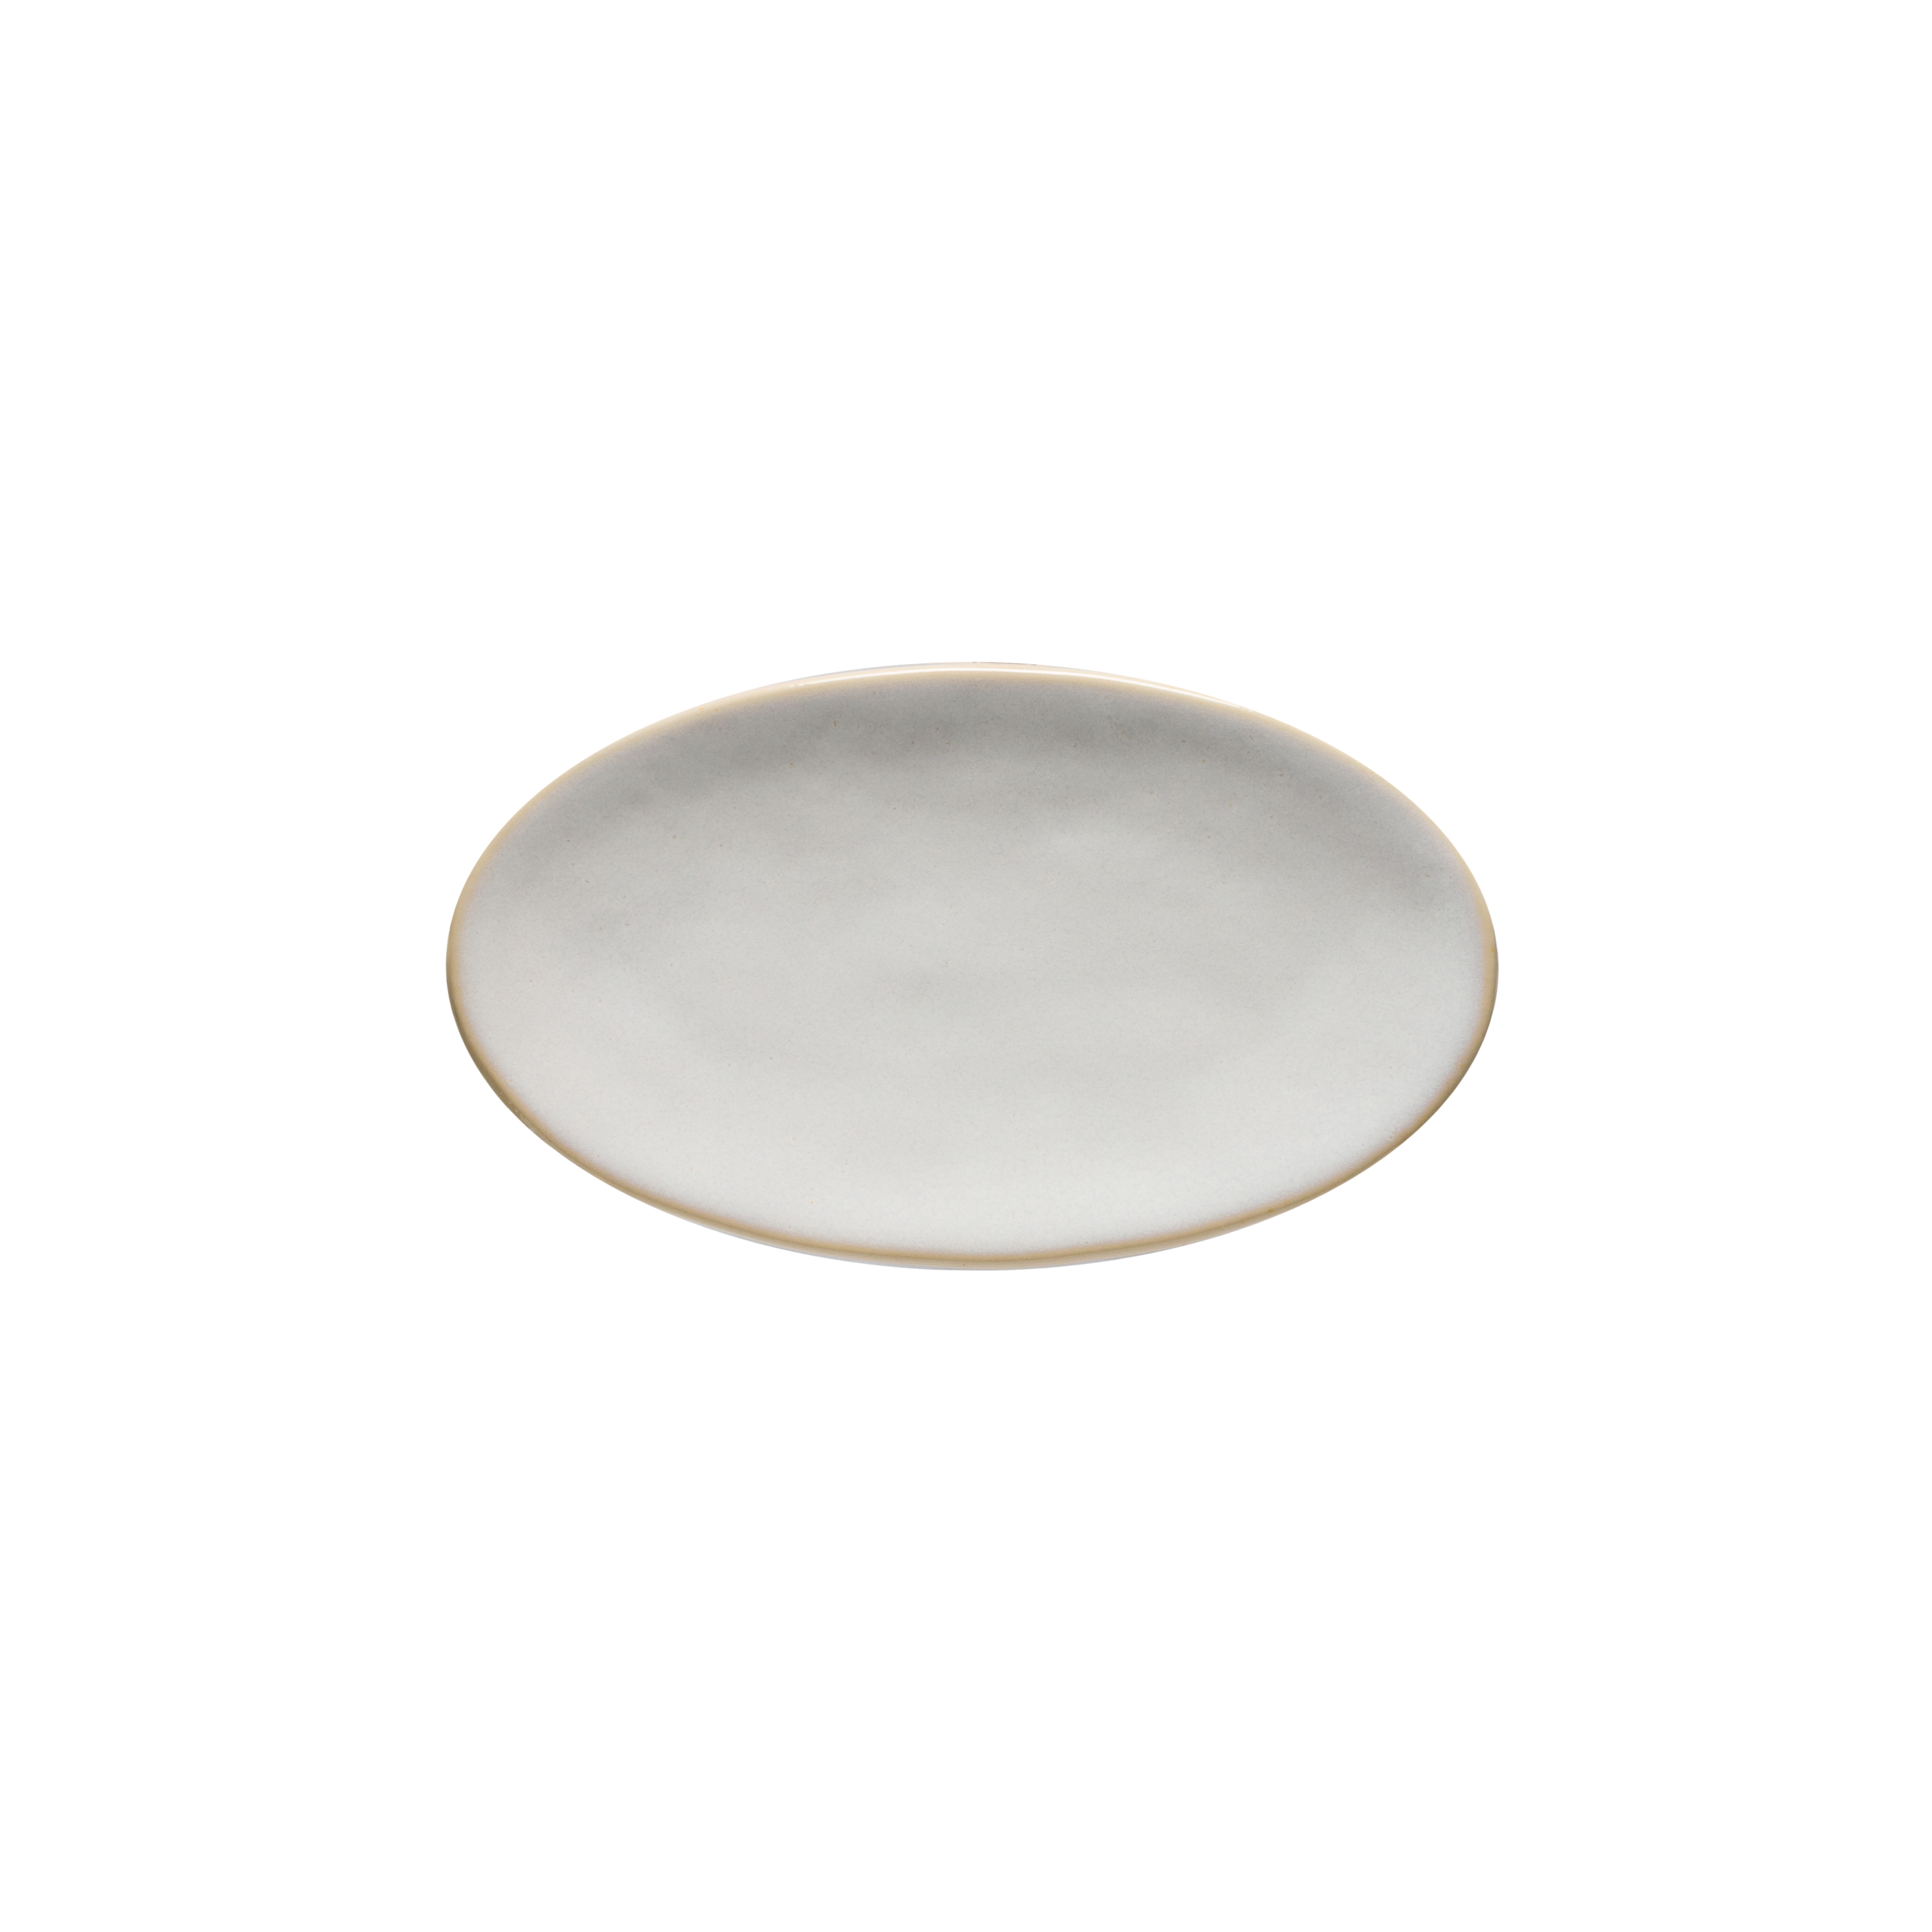 Roda White Oval Platter 21.7cm Gift